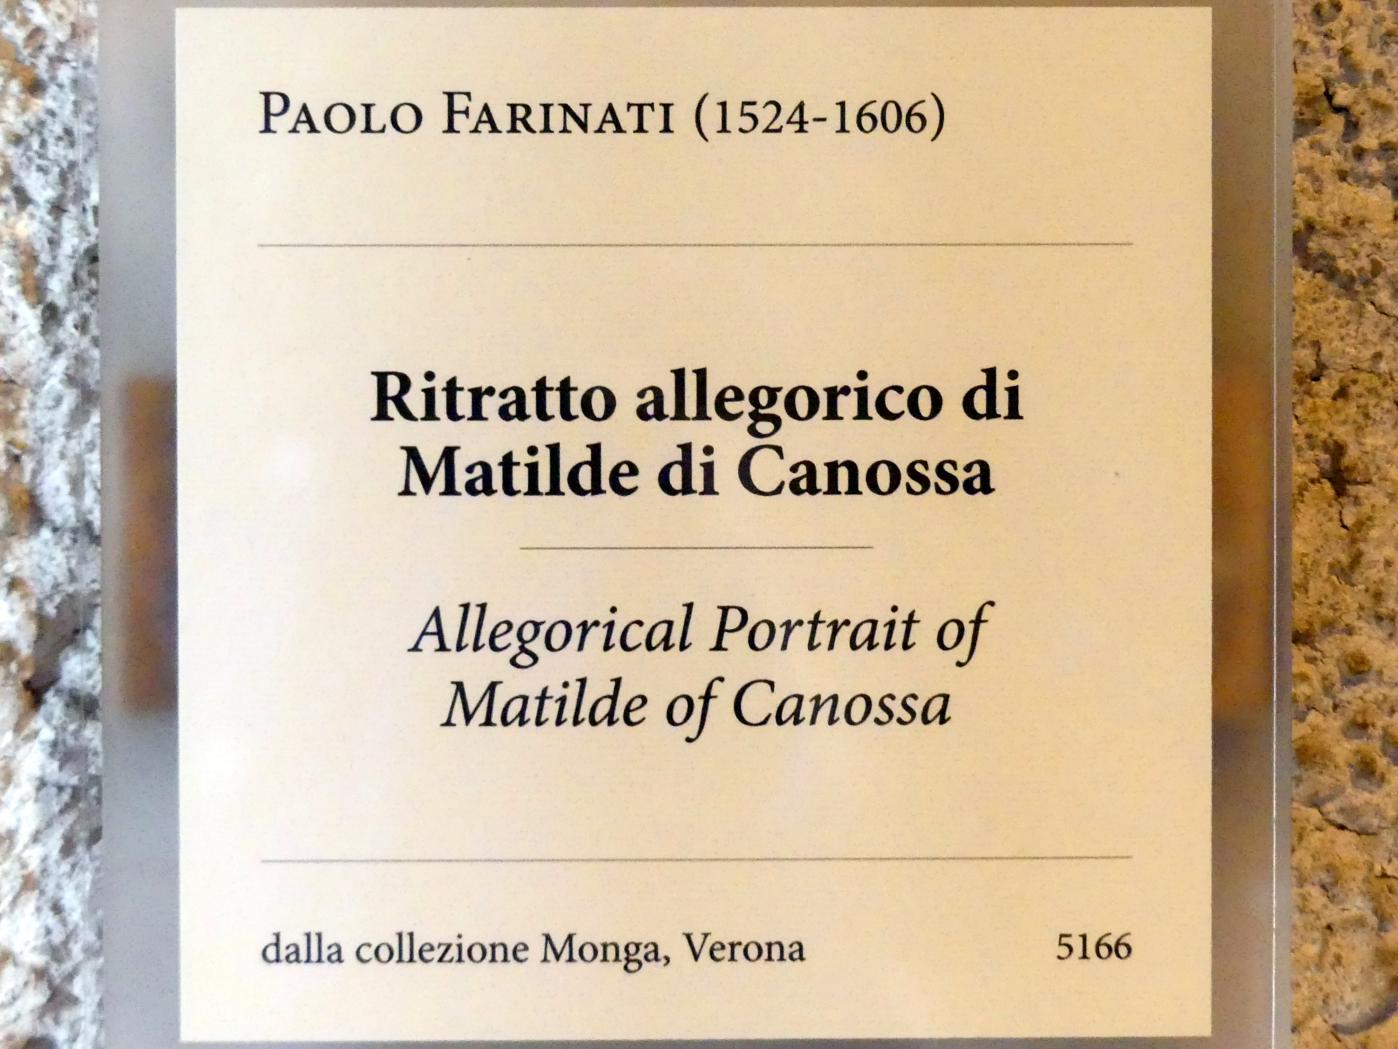 Paolo Farinato (Paolo Farinati) (1562), Allegorisches Porträt von Matilde von Canossa, Verona, Museo di Castelvecchio, Saal 25, Undatiert, Bild 2/2